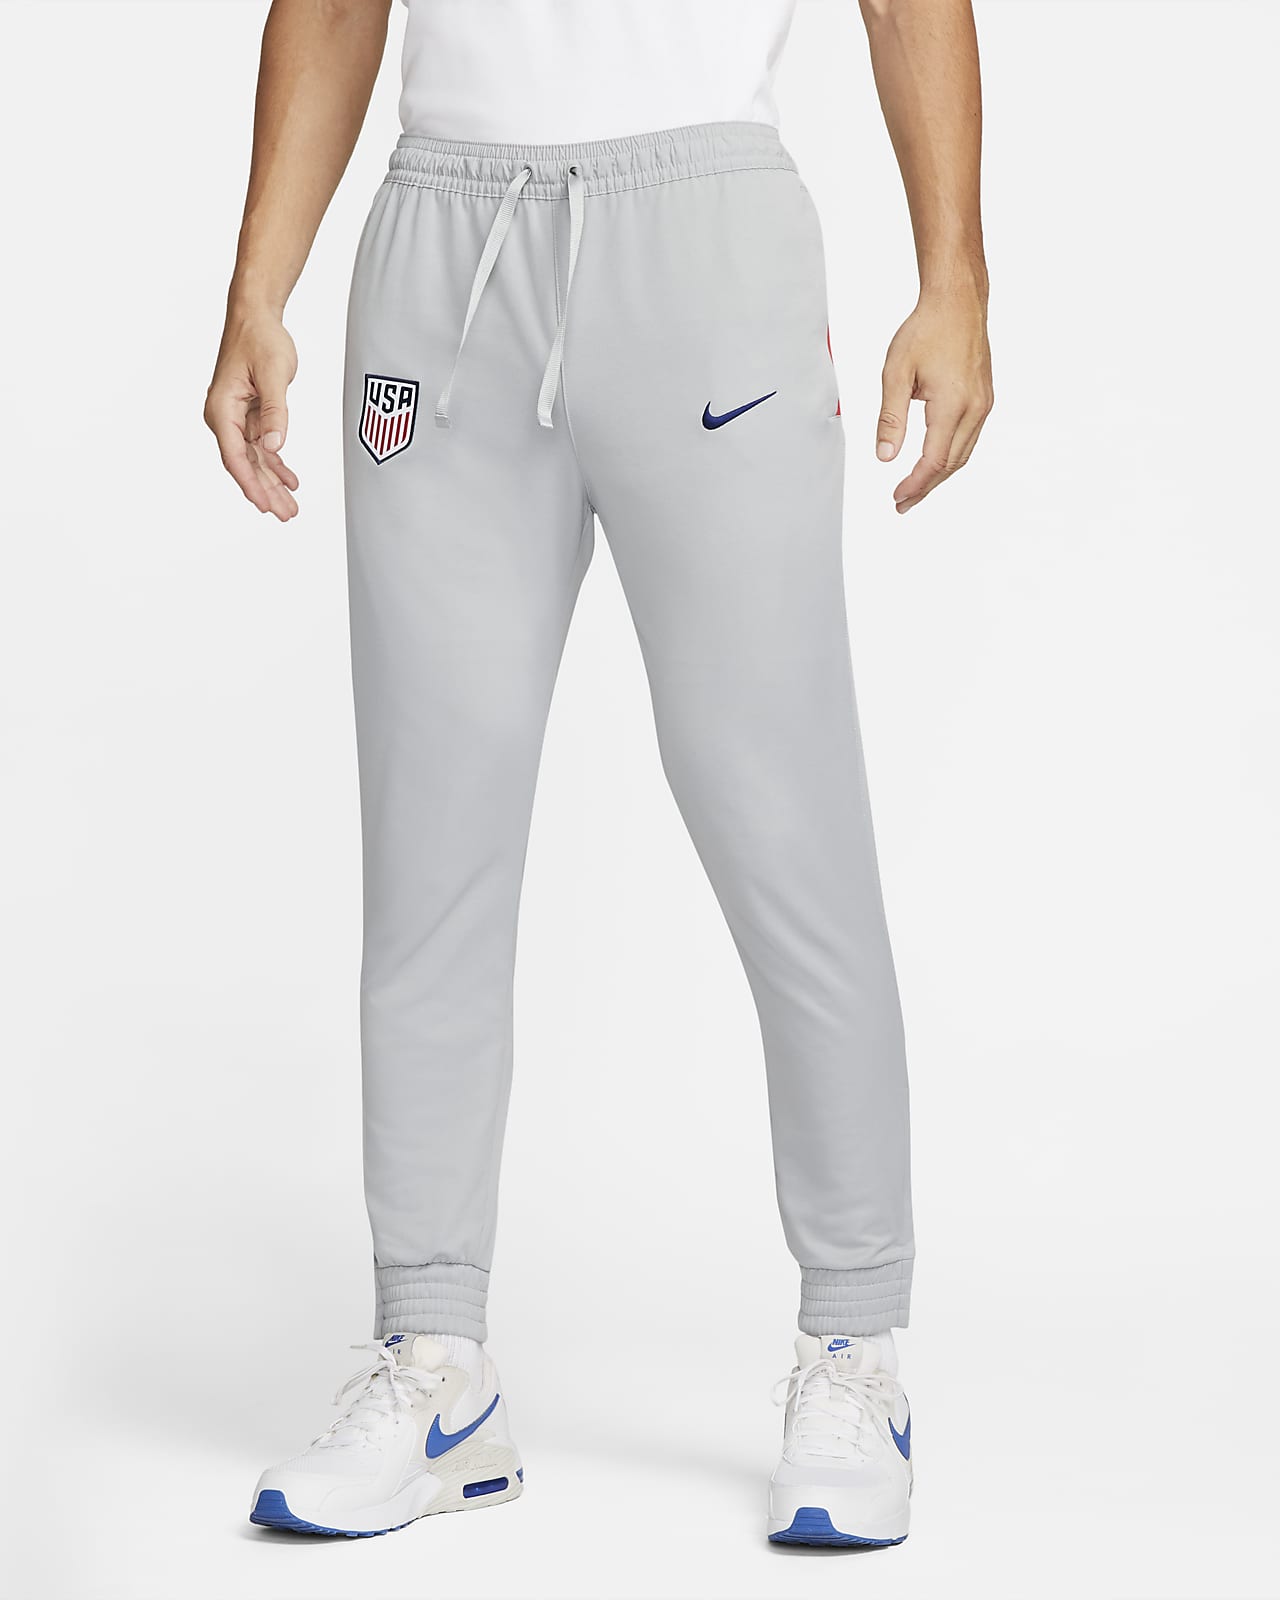 Pantalones de tejido Knit para hombre Estados Unidos. Nike.com